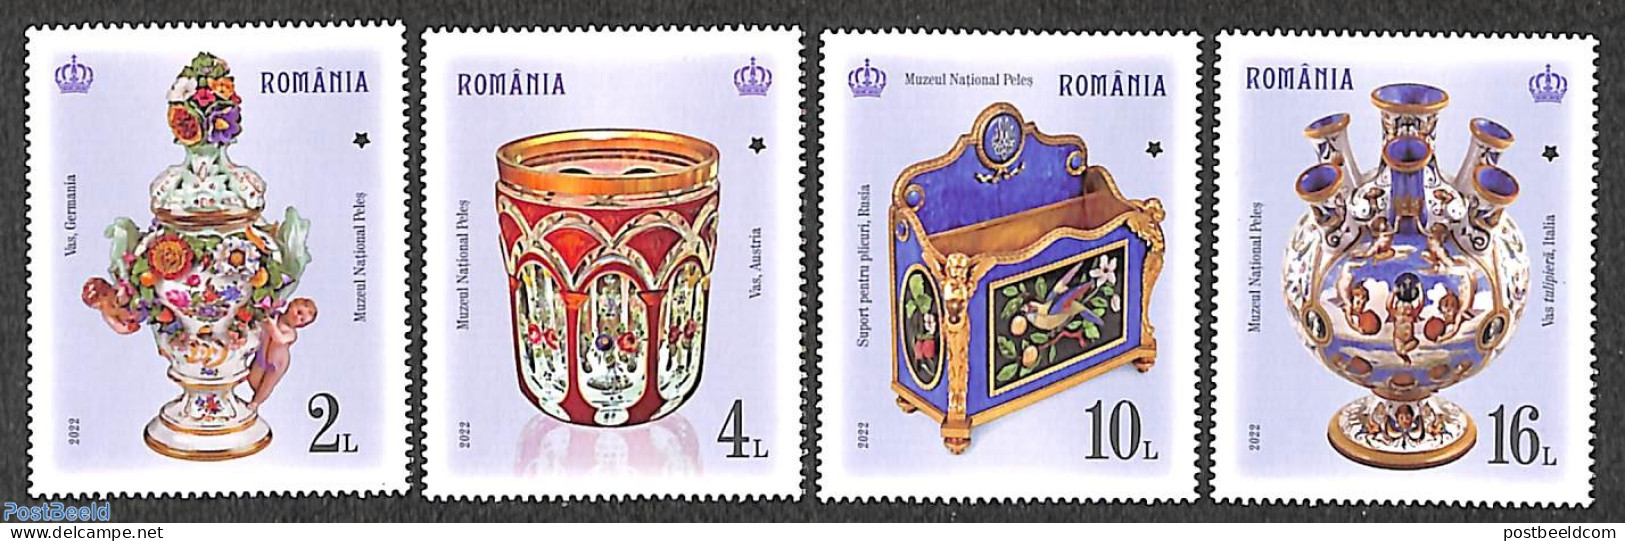 Romania 2022 Peles Castle Treasures 4v, Mint NH, Art - Art & Antique Objects - Ceramics - Ongebruikt